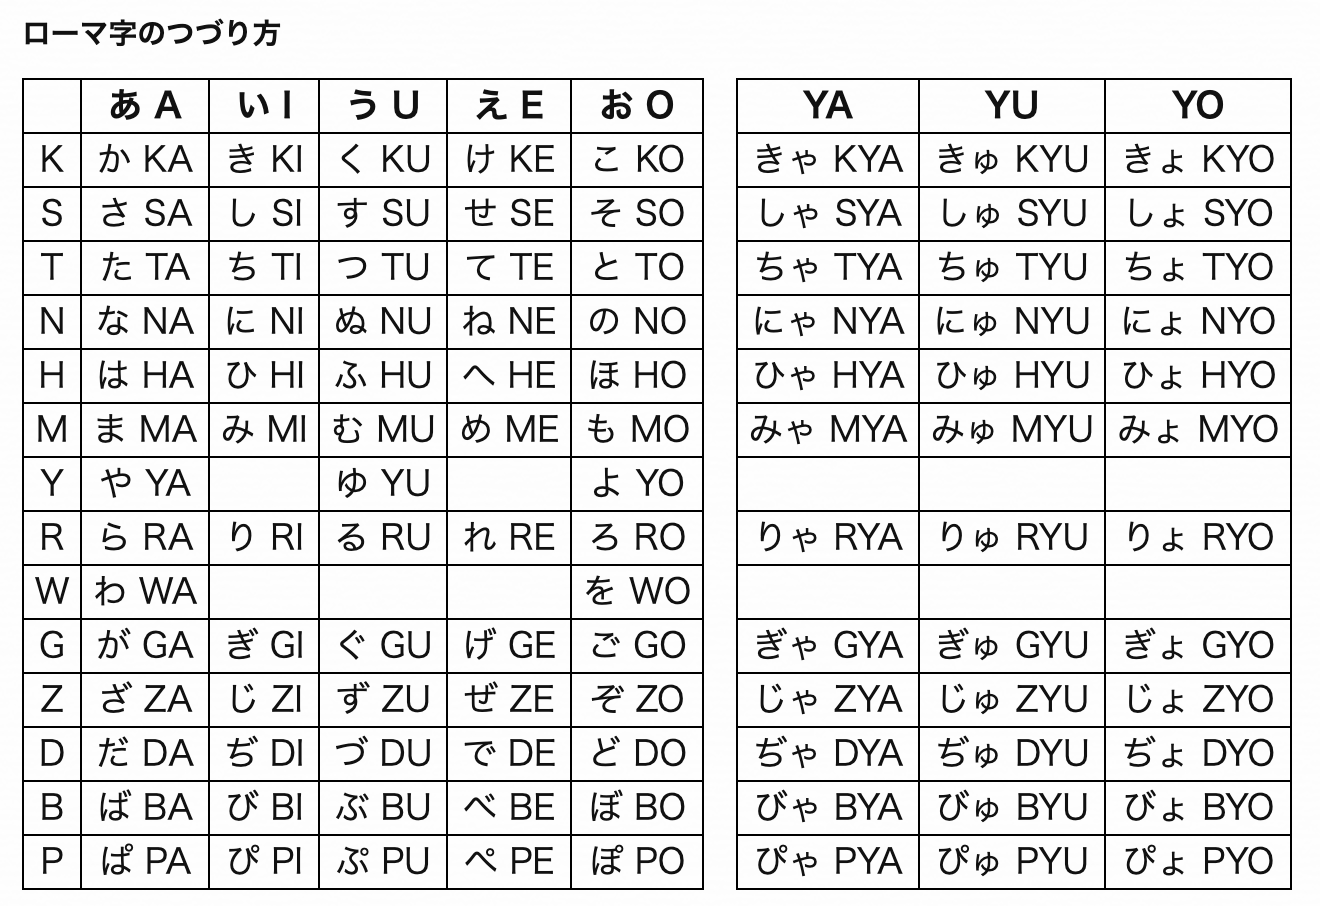 訓令式に準拠した 日本式ローマ字のづづり方 と差分でまとめた ヘボン式ローマ字